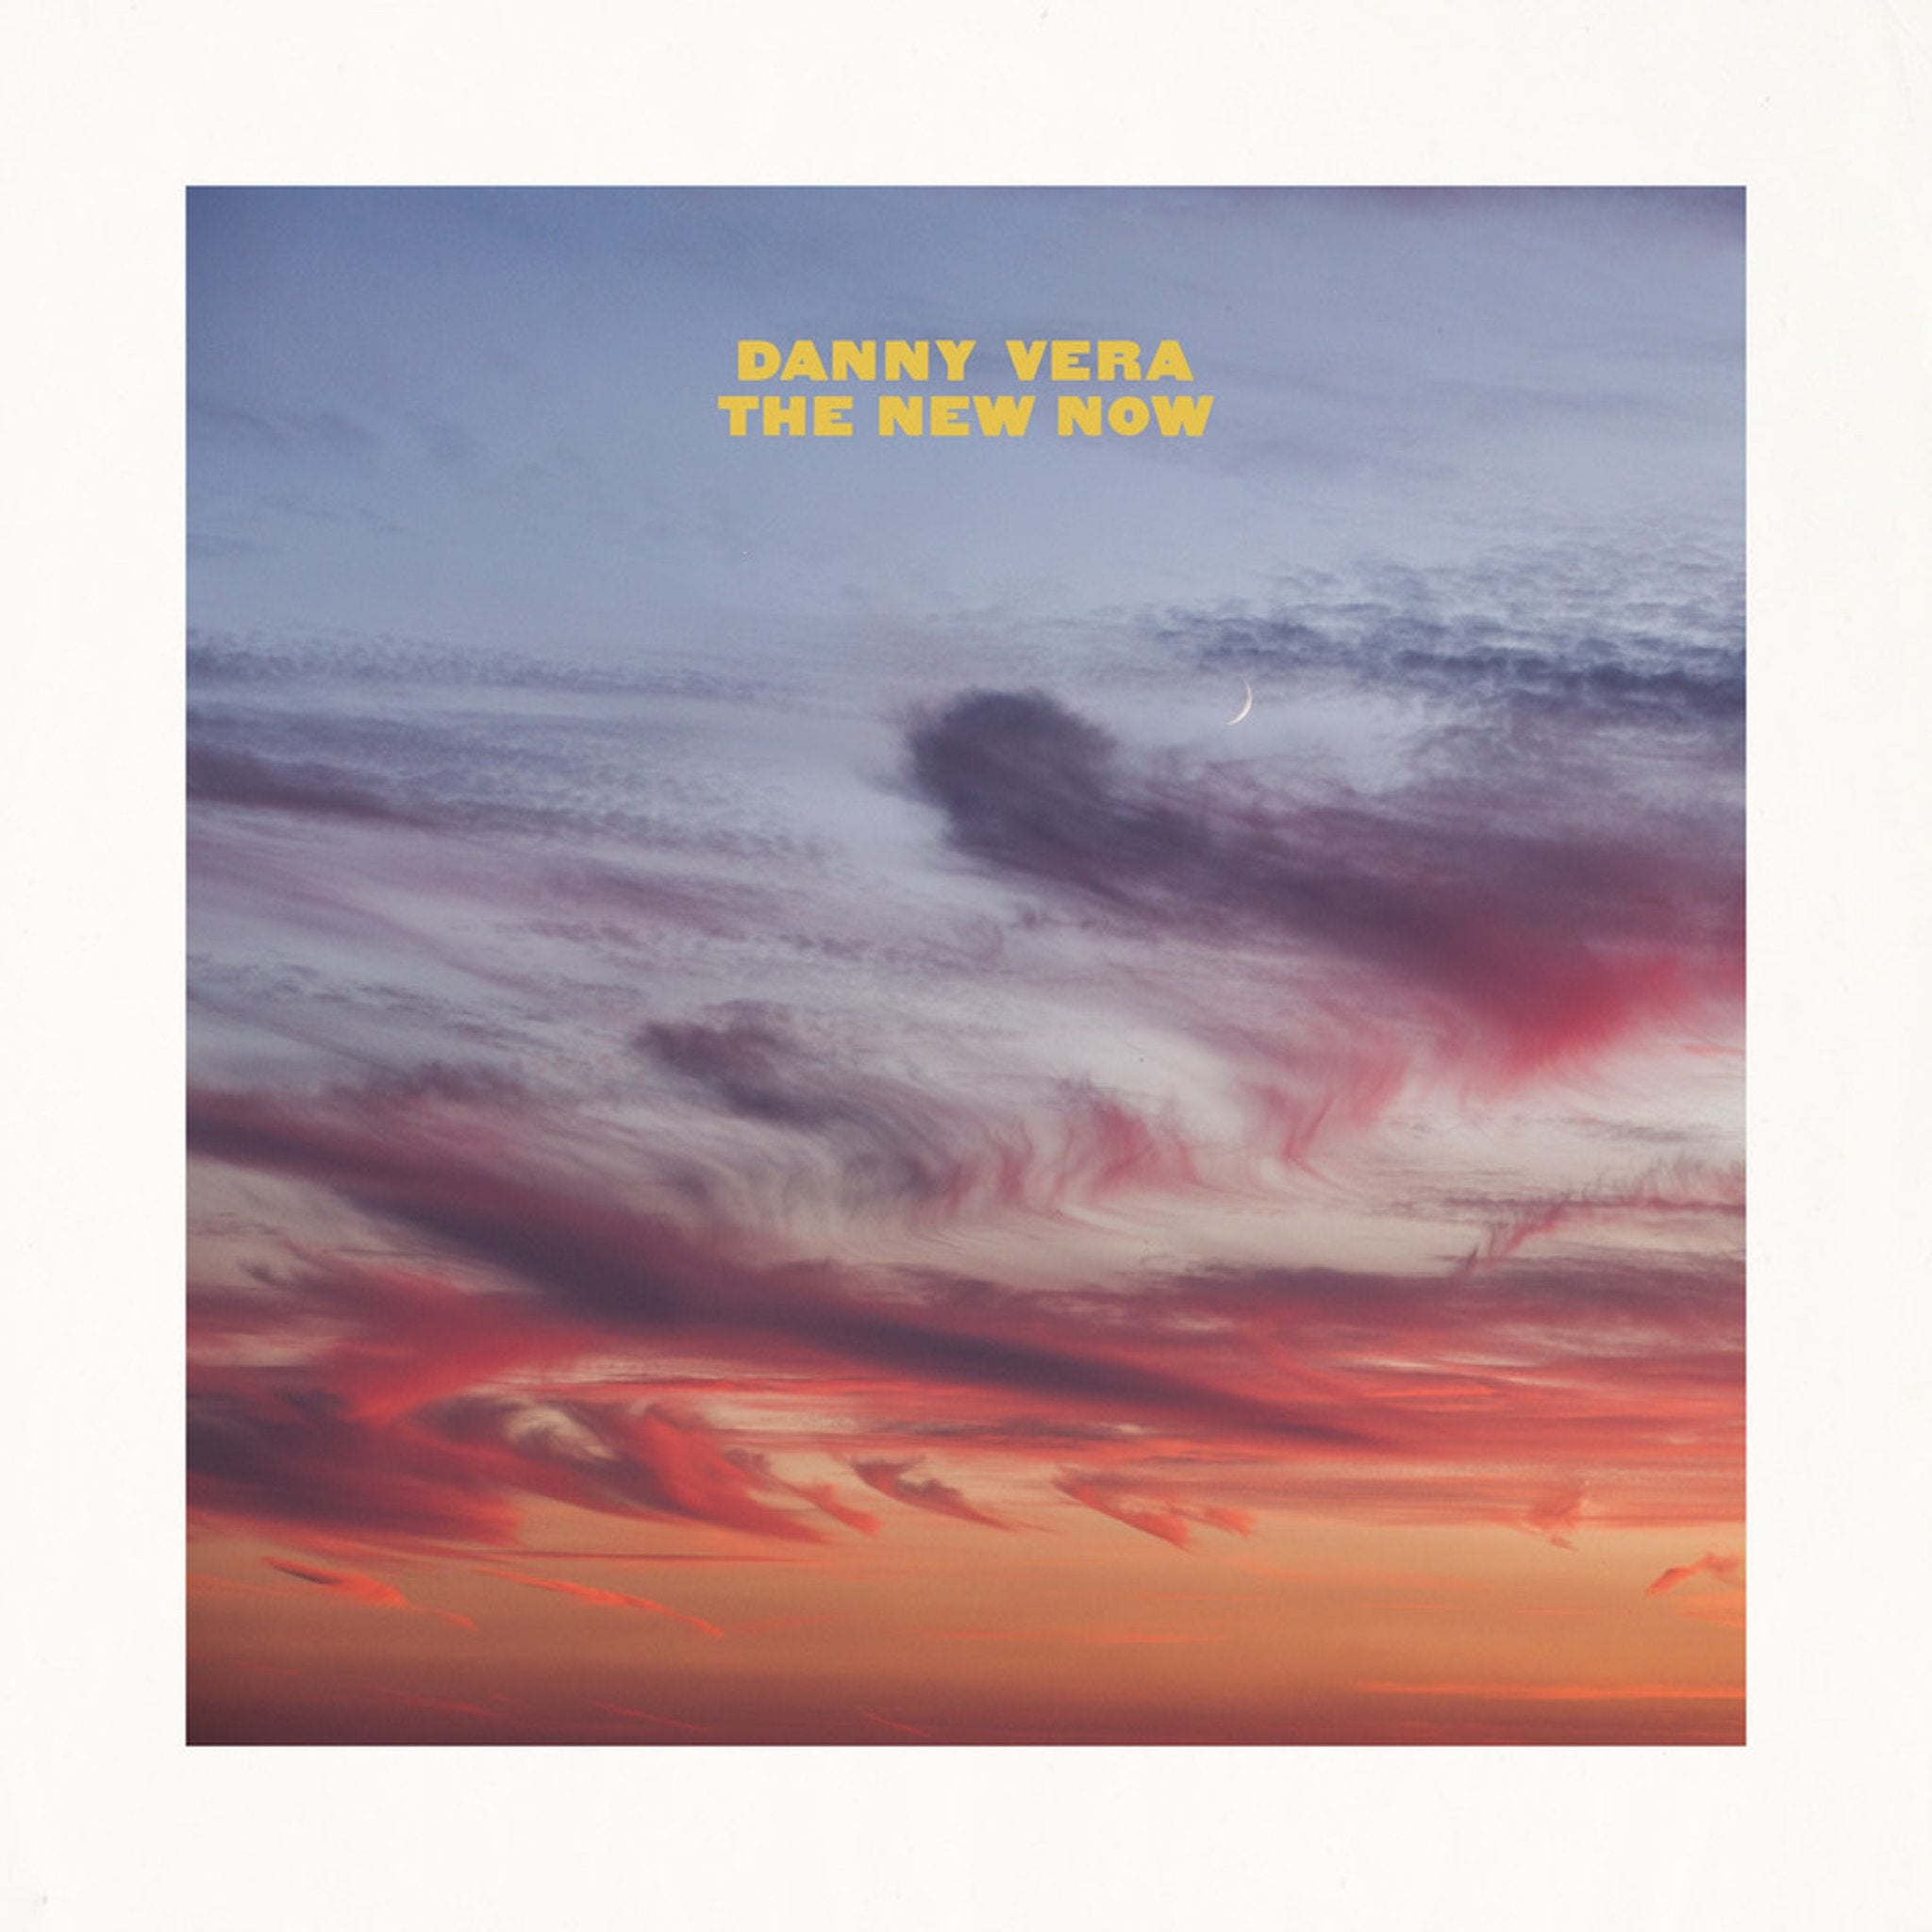 Danny Vera - New Now  |  Vinyl LP | Danny Vera - New Now | Records on Vinyl